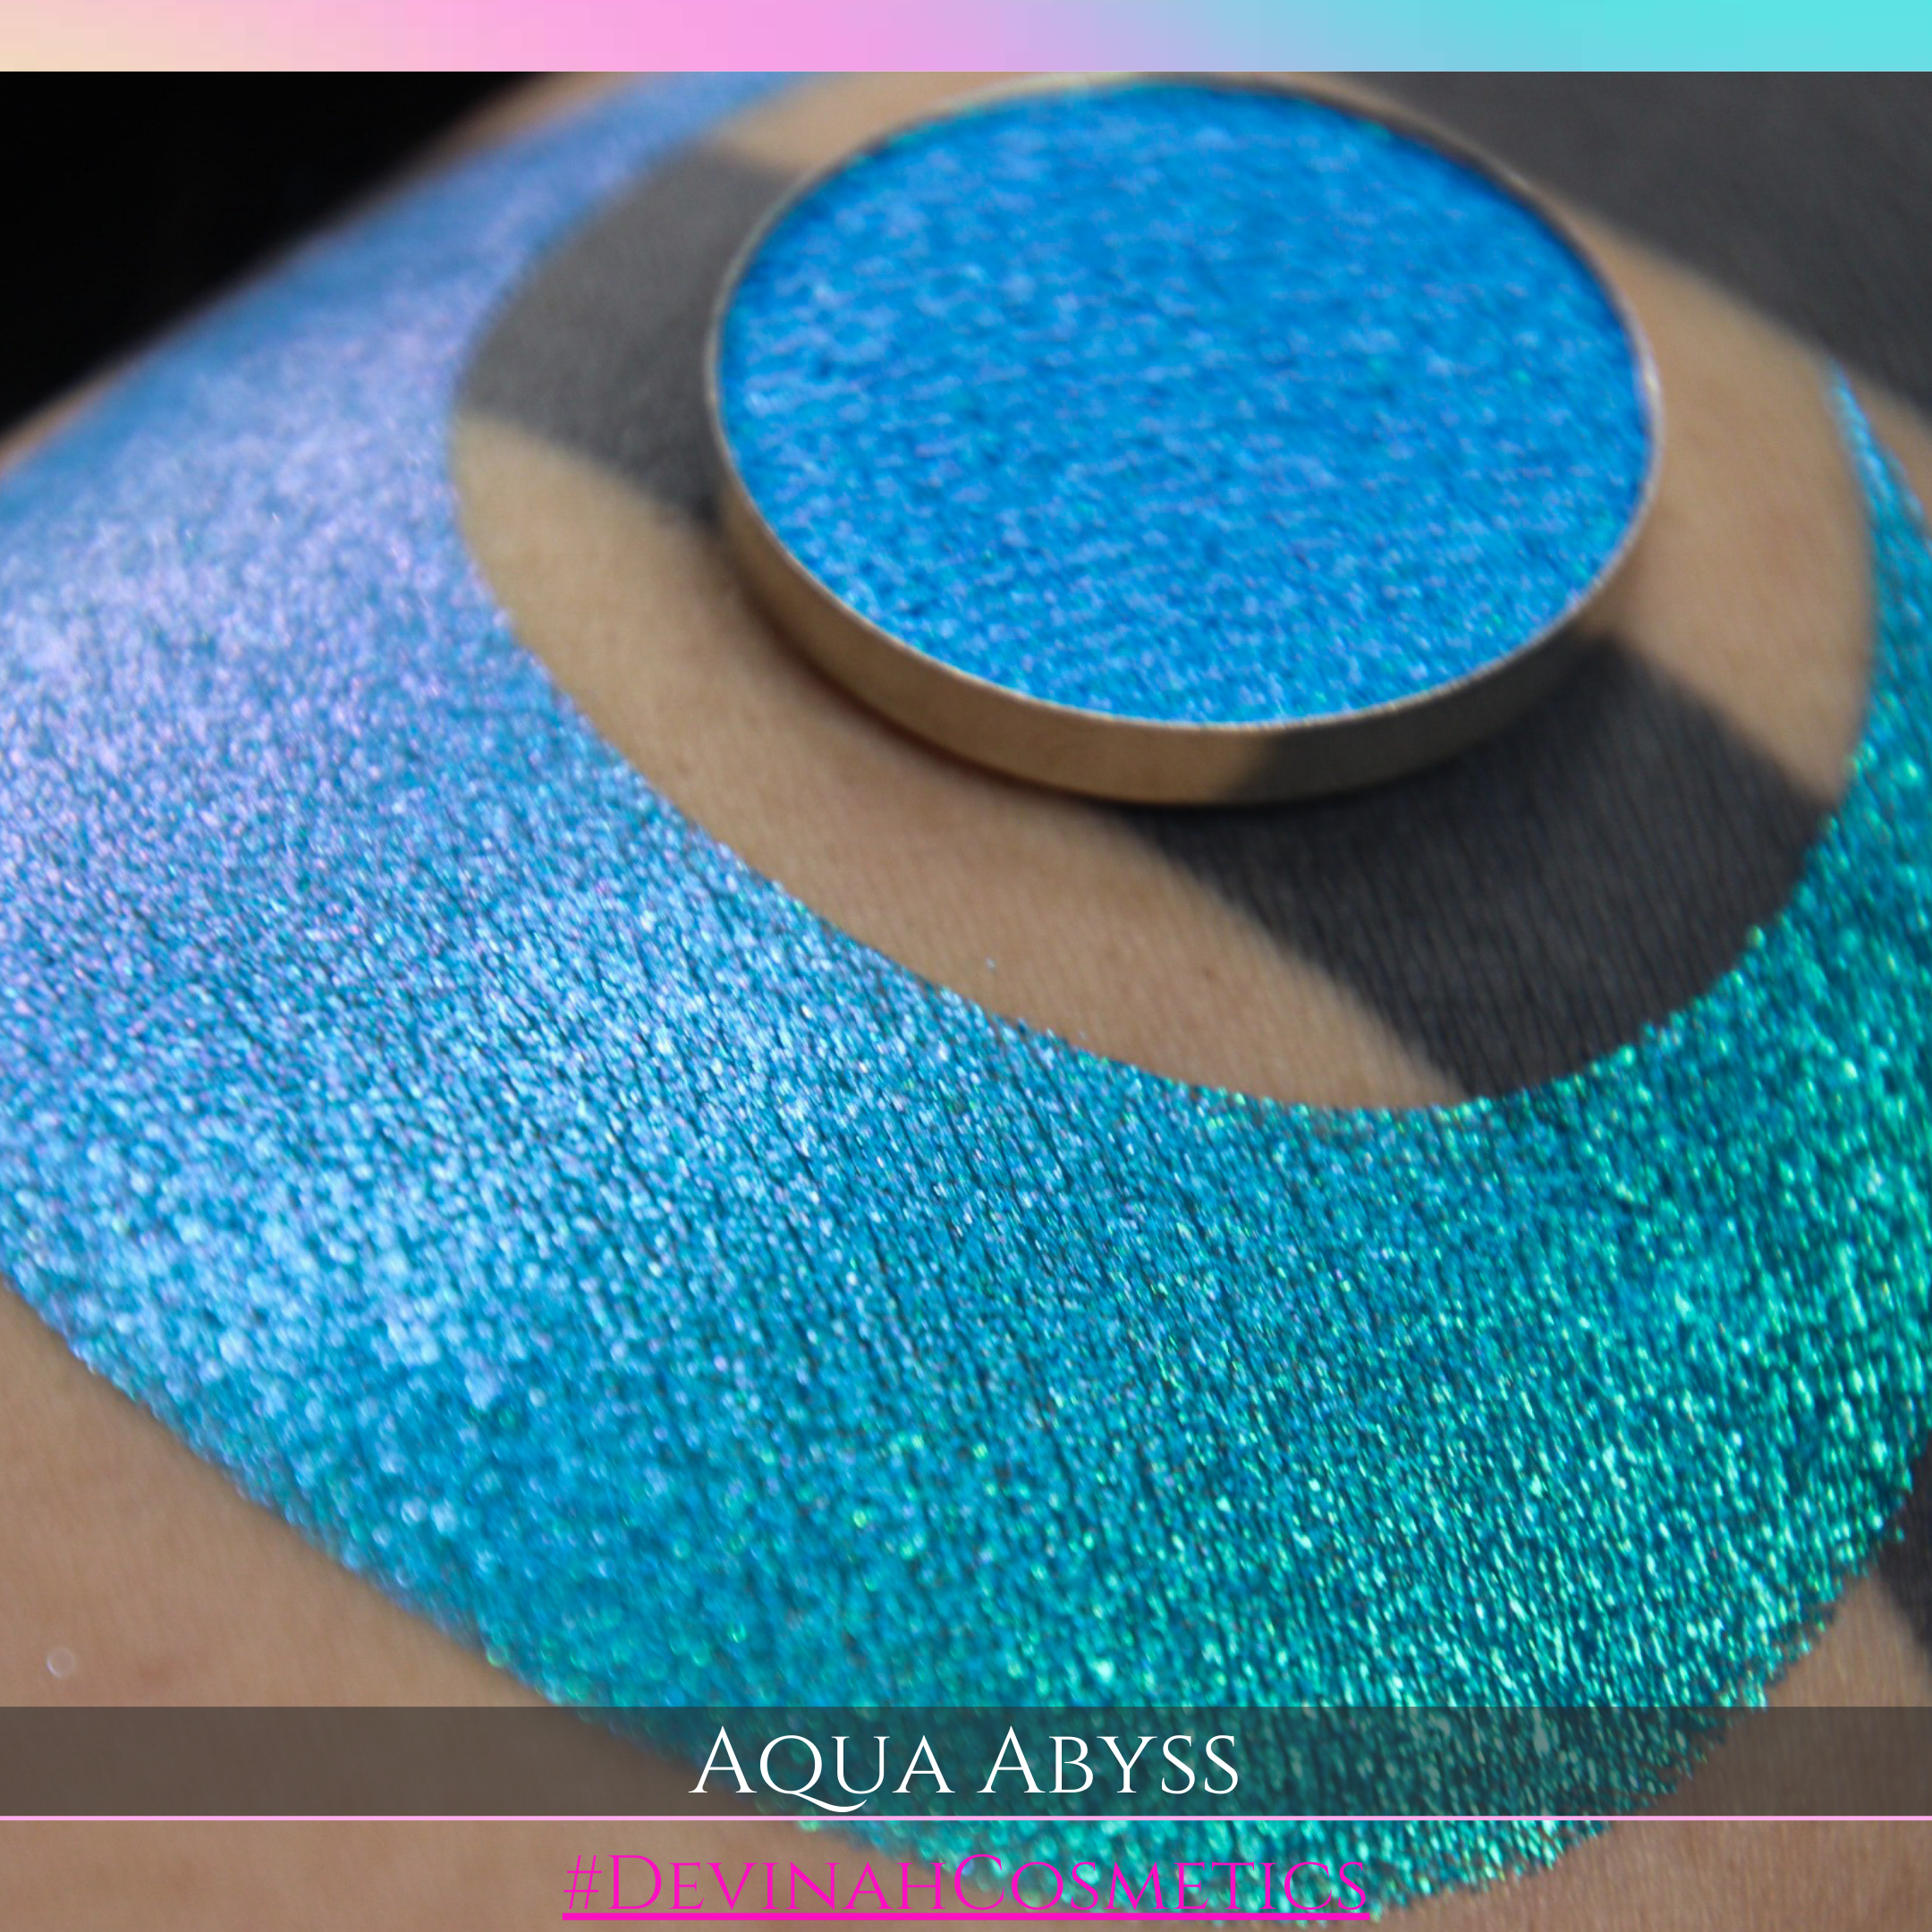 AQUA ABYSS Pressed Pigment